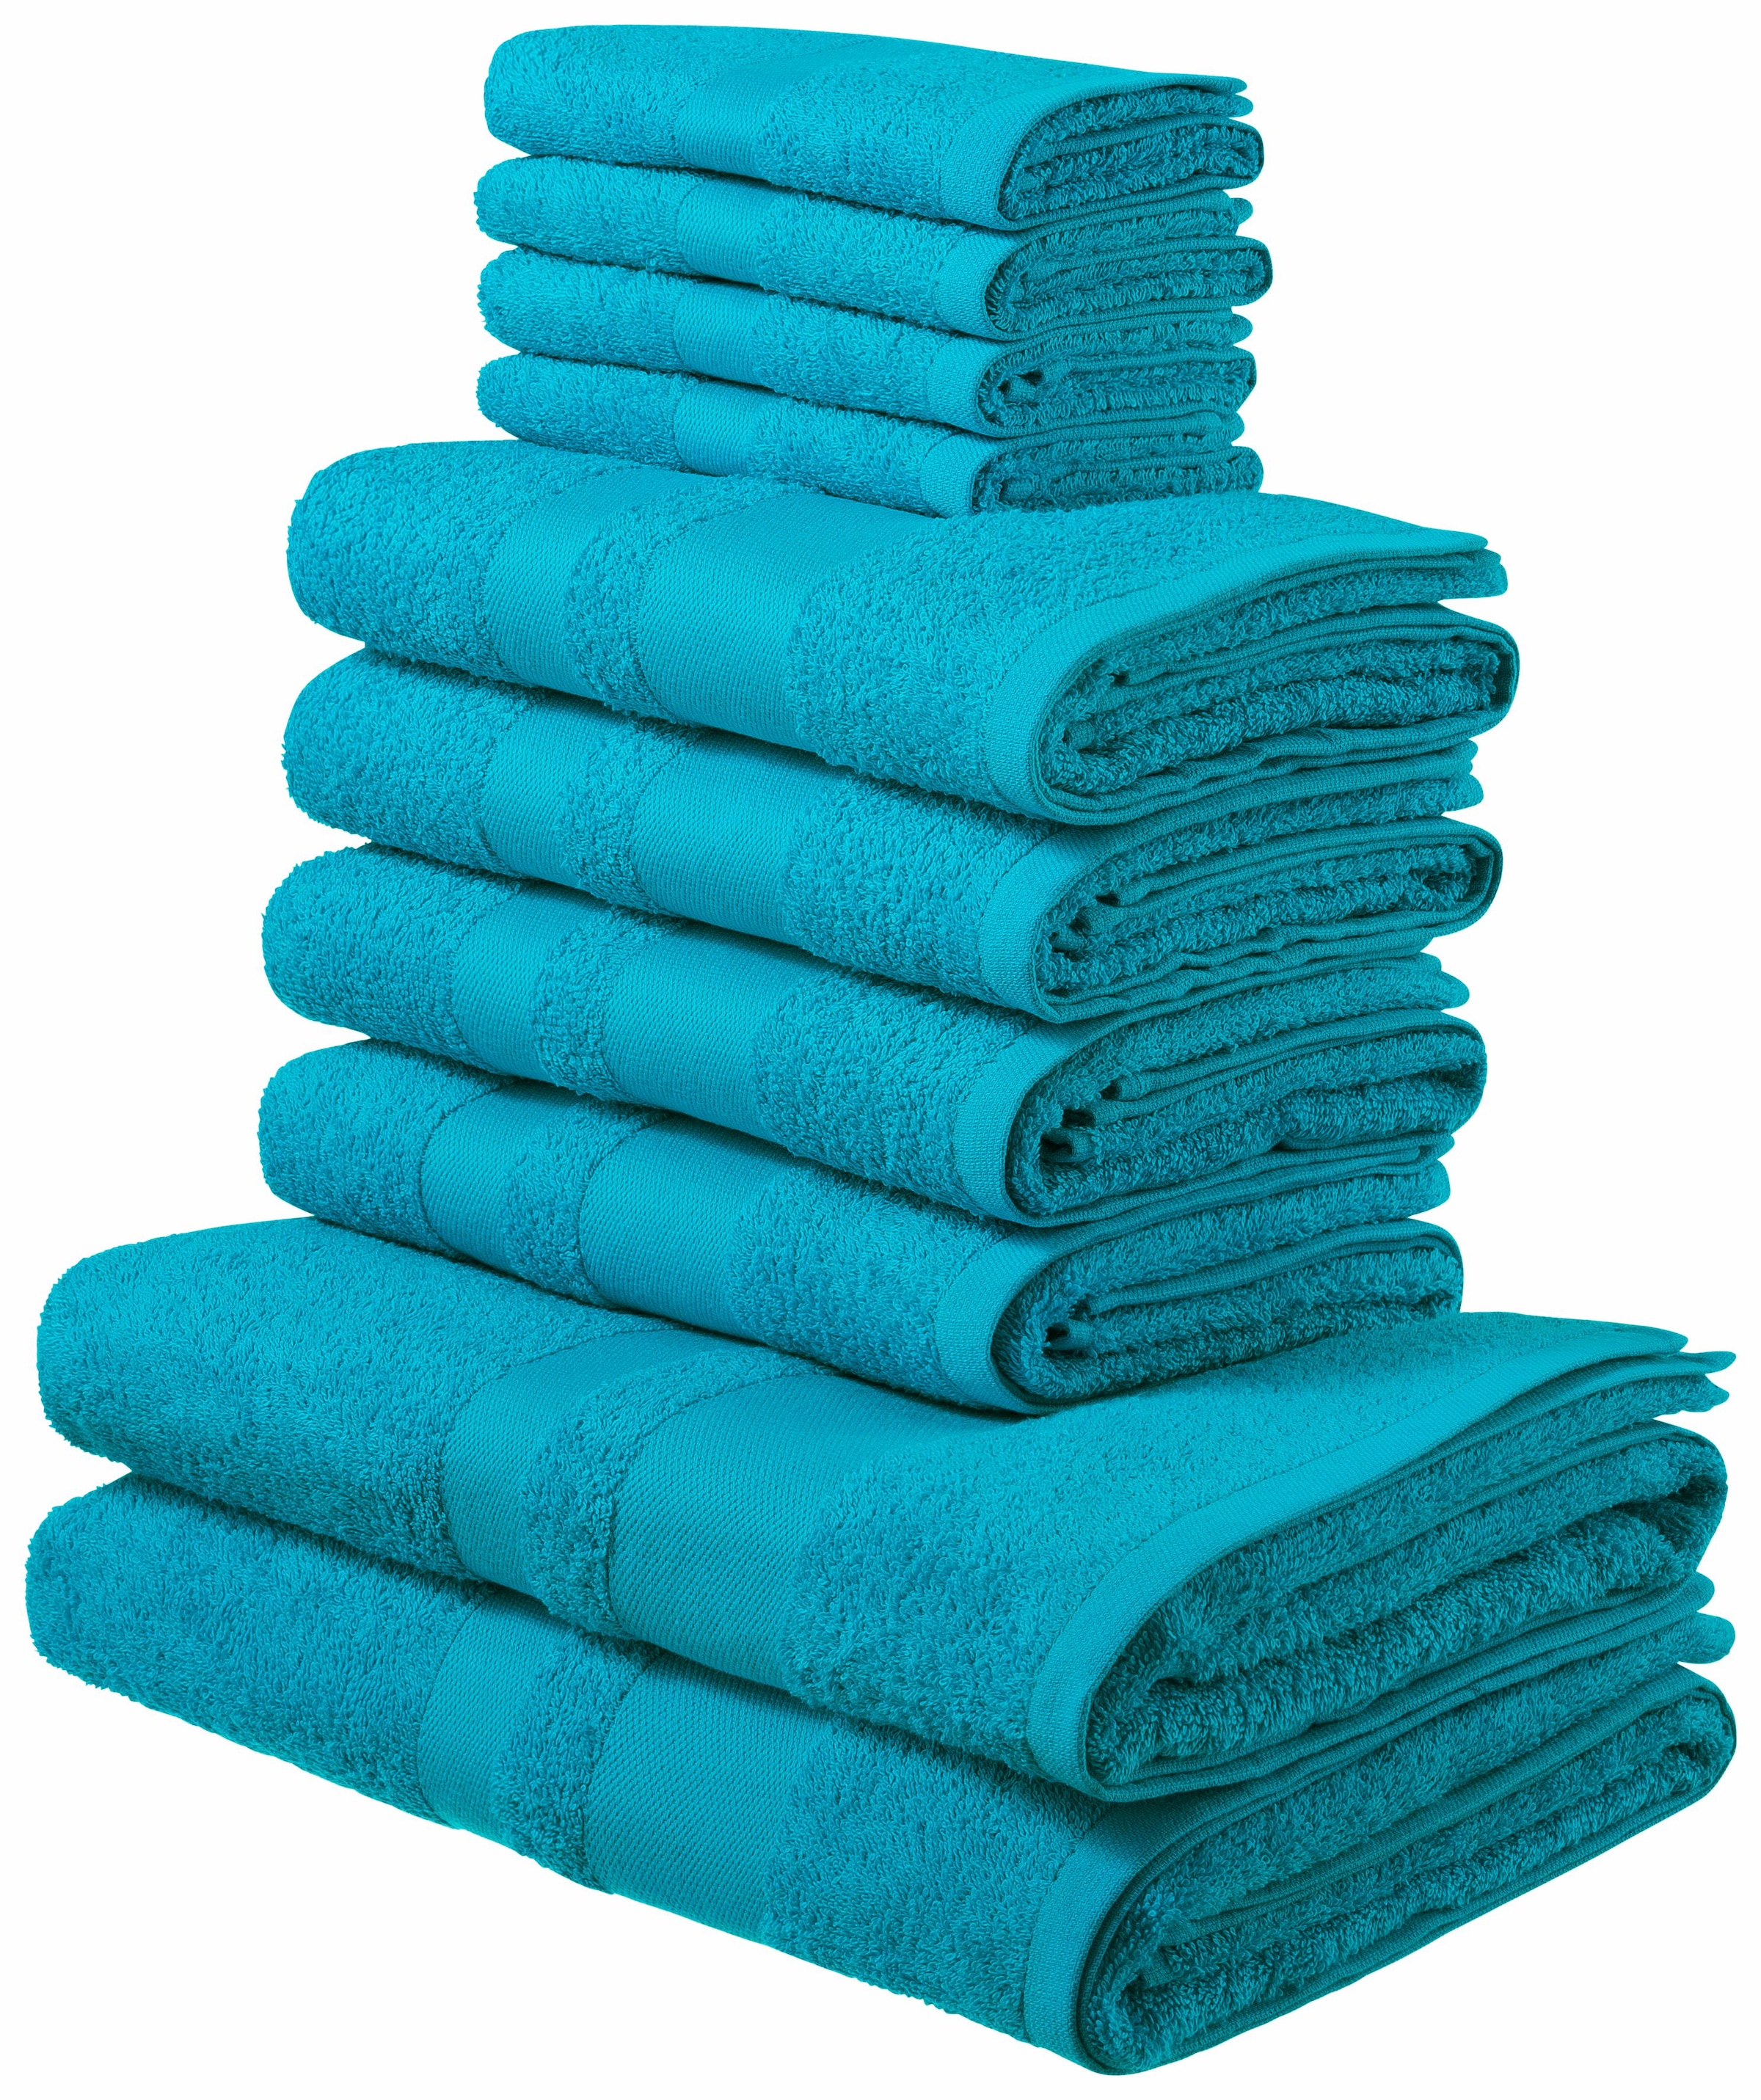 Handtücher in Blau bestellen auf Raten